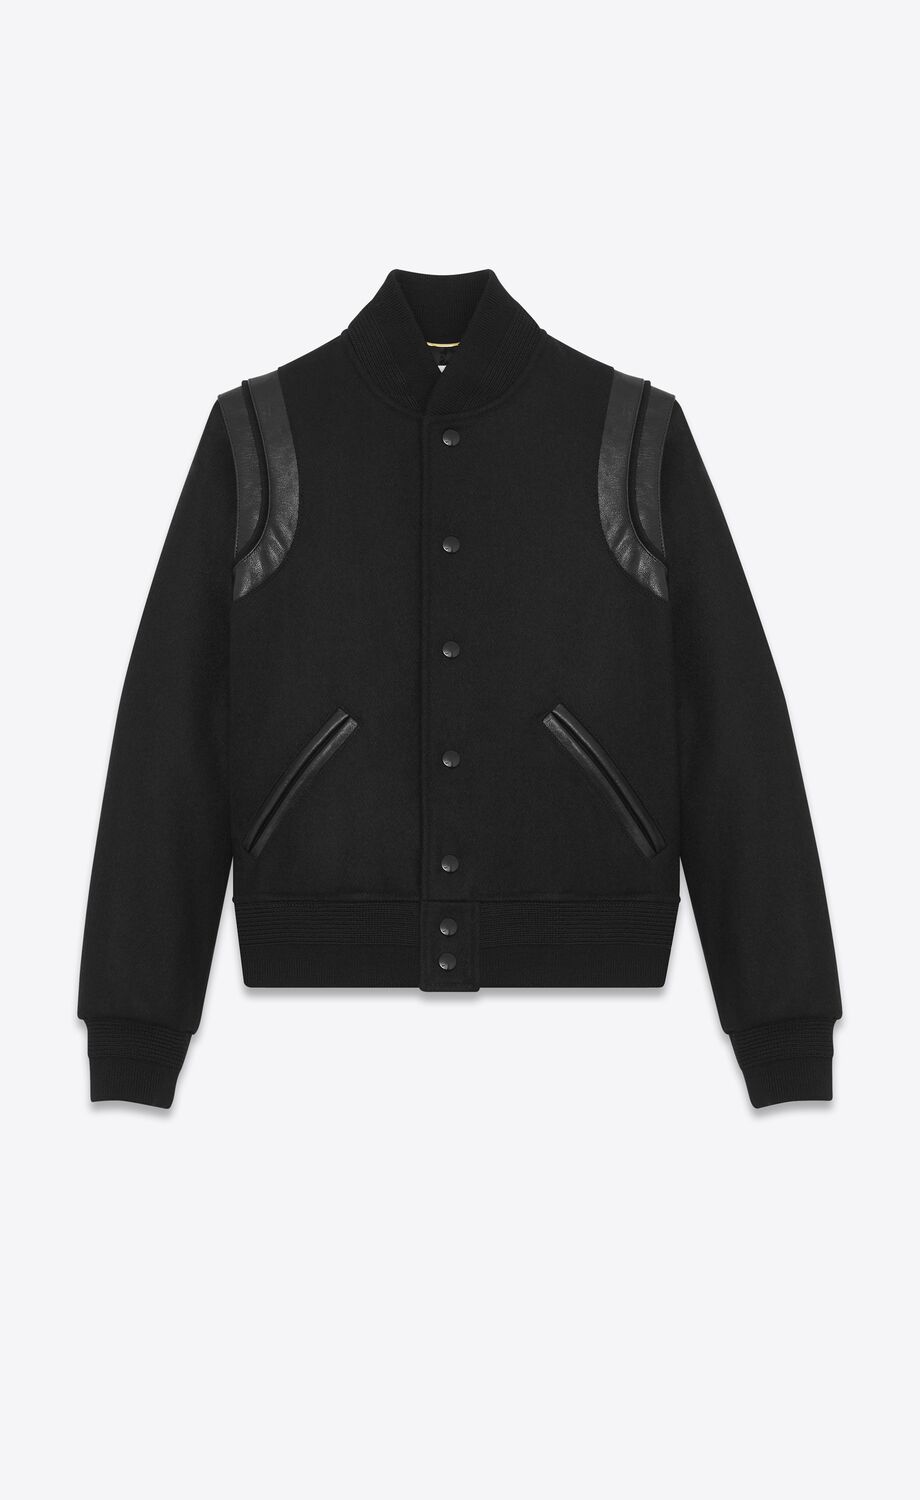 Varsity jacket in black wool | Saint Laurent | YSL.com